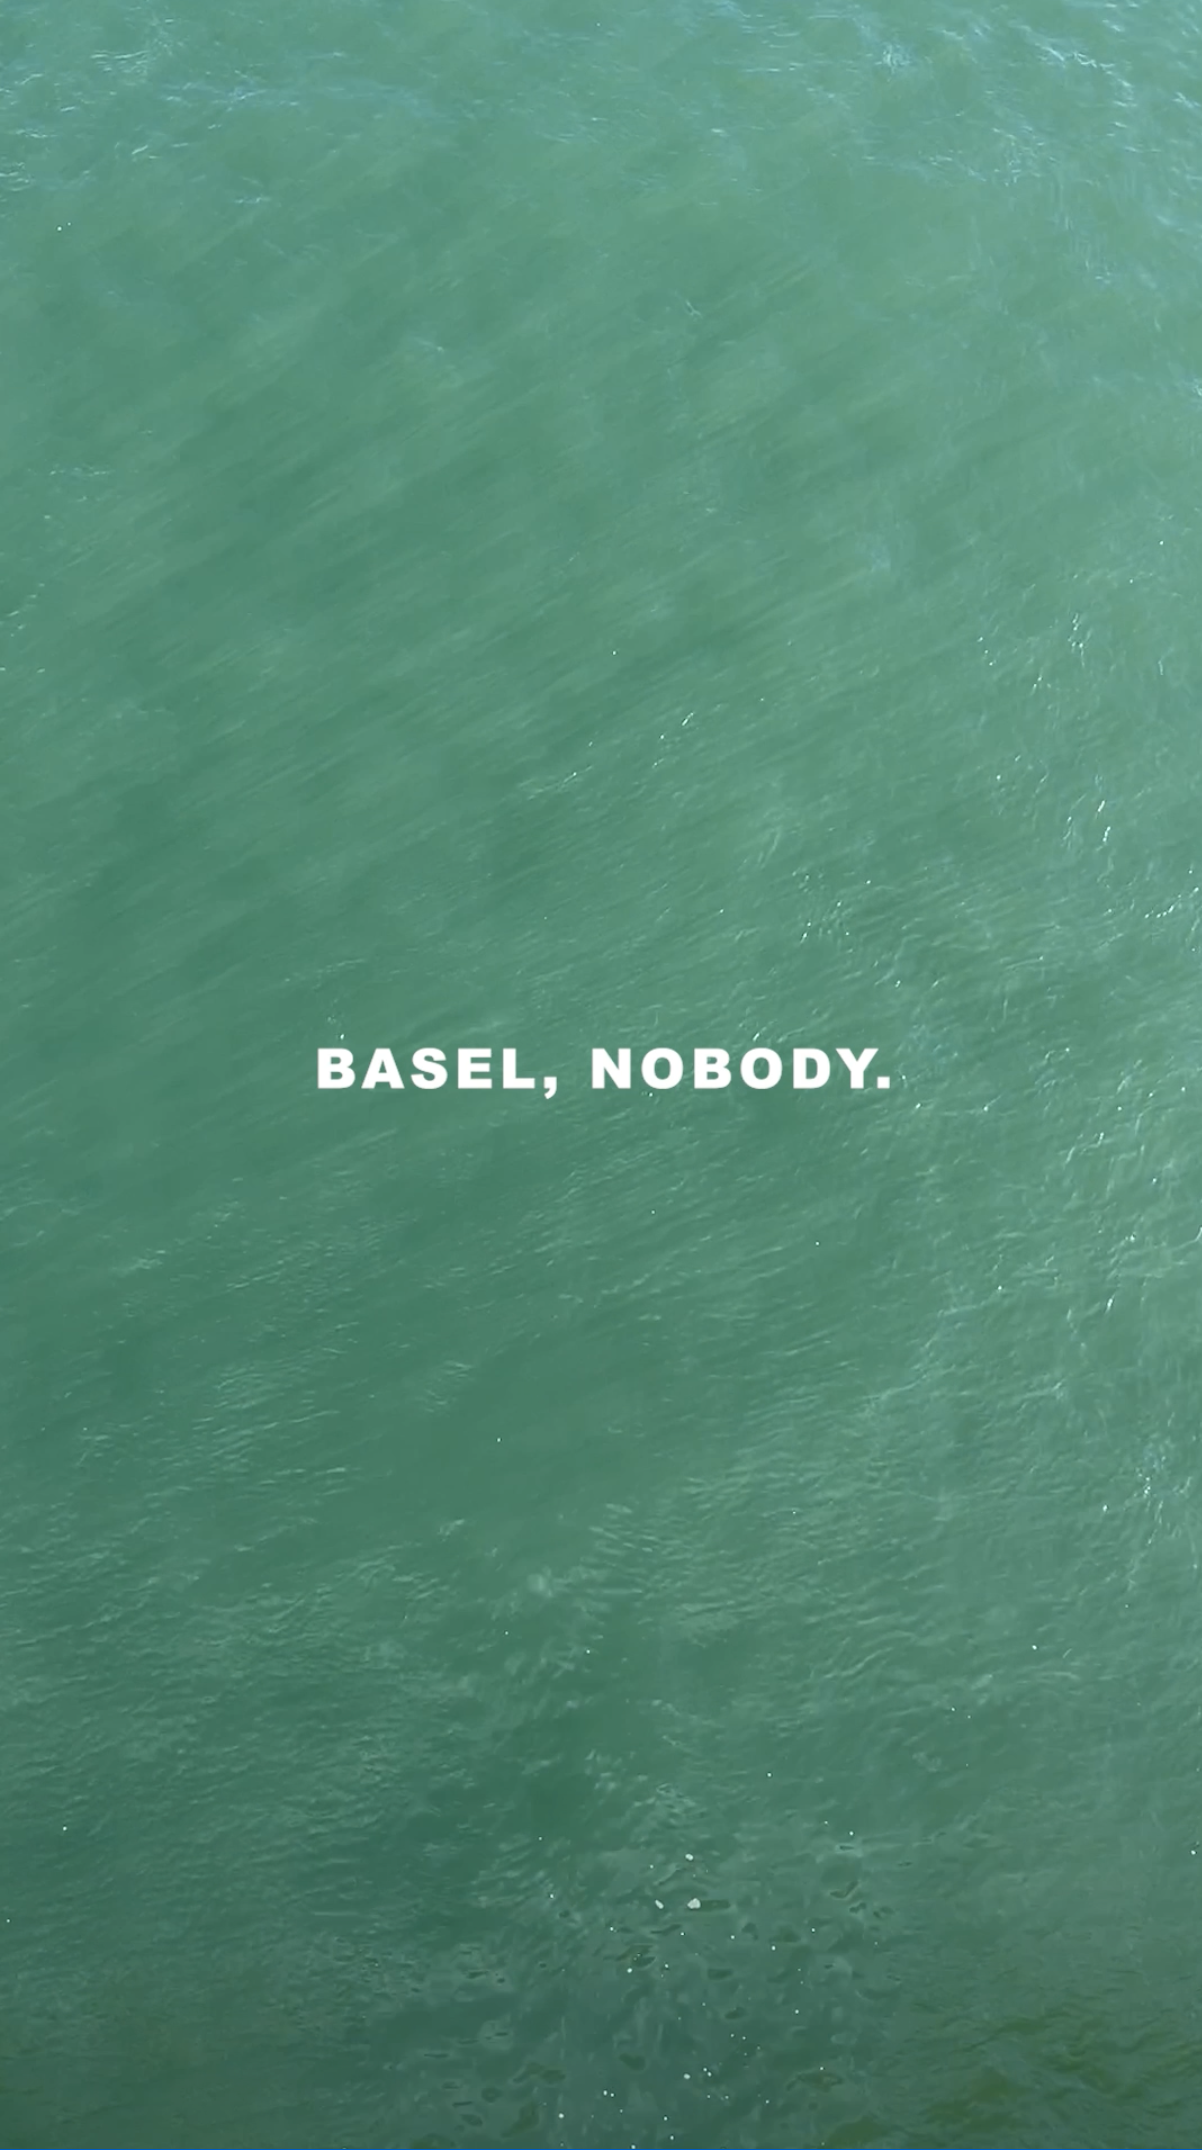 BASEL, NOBODY.